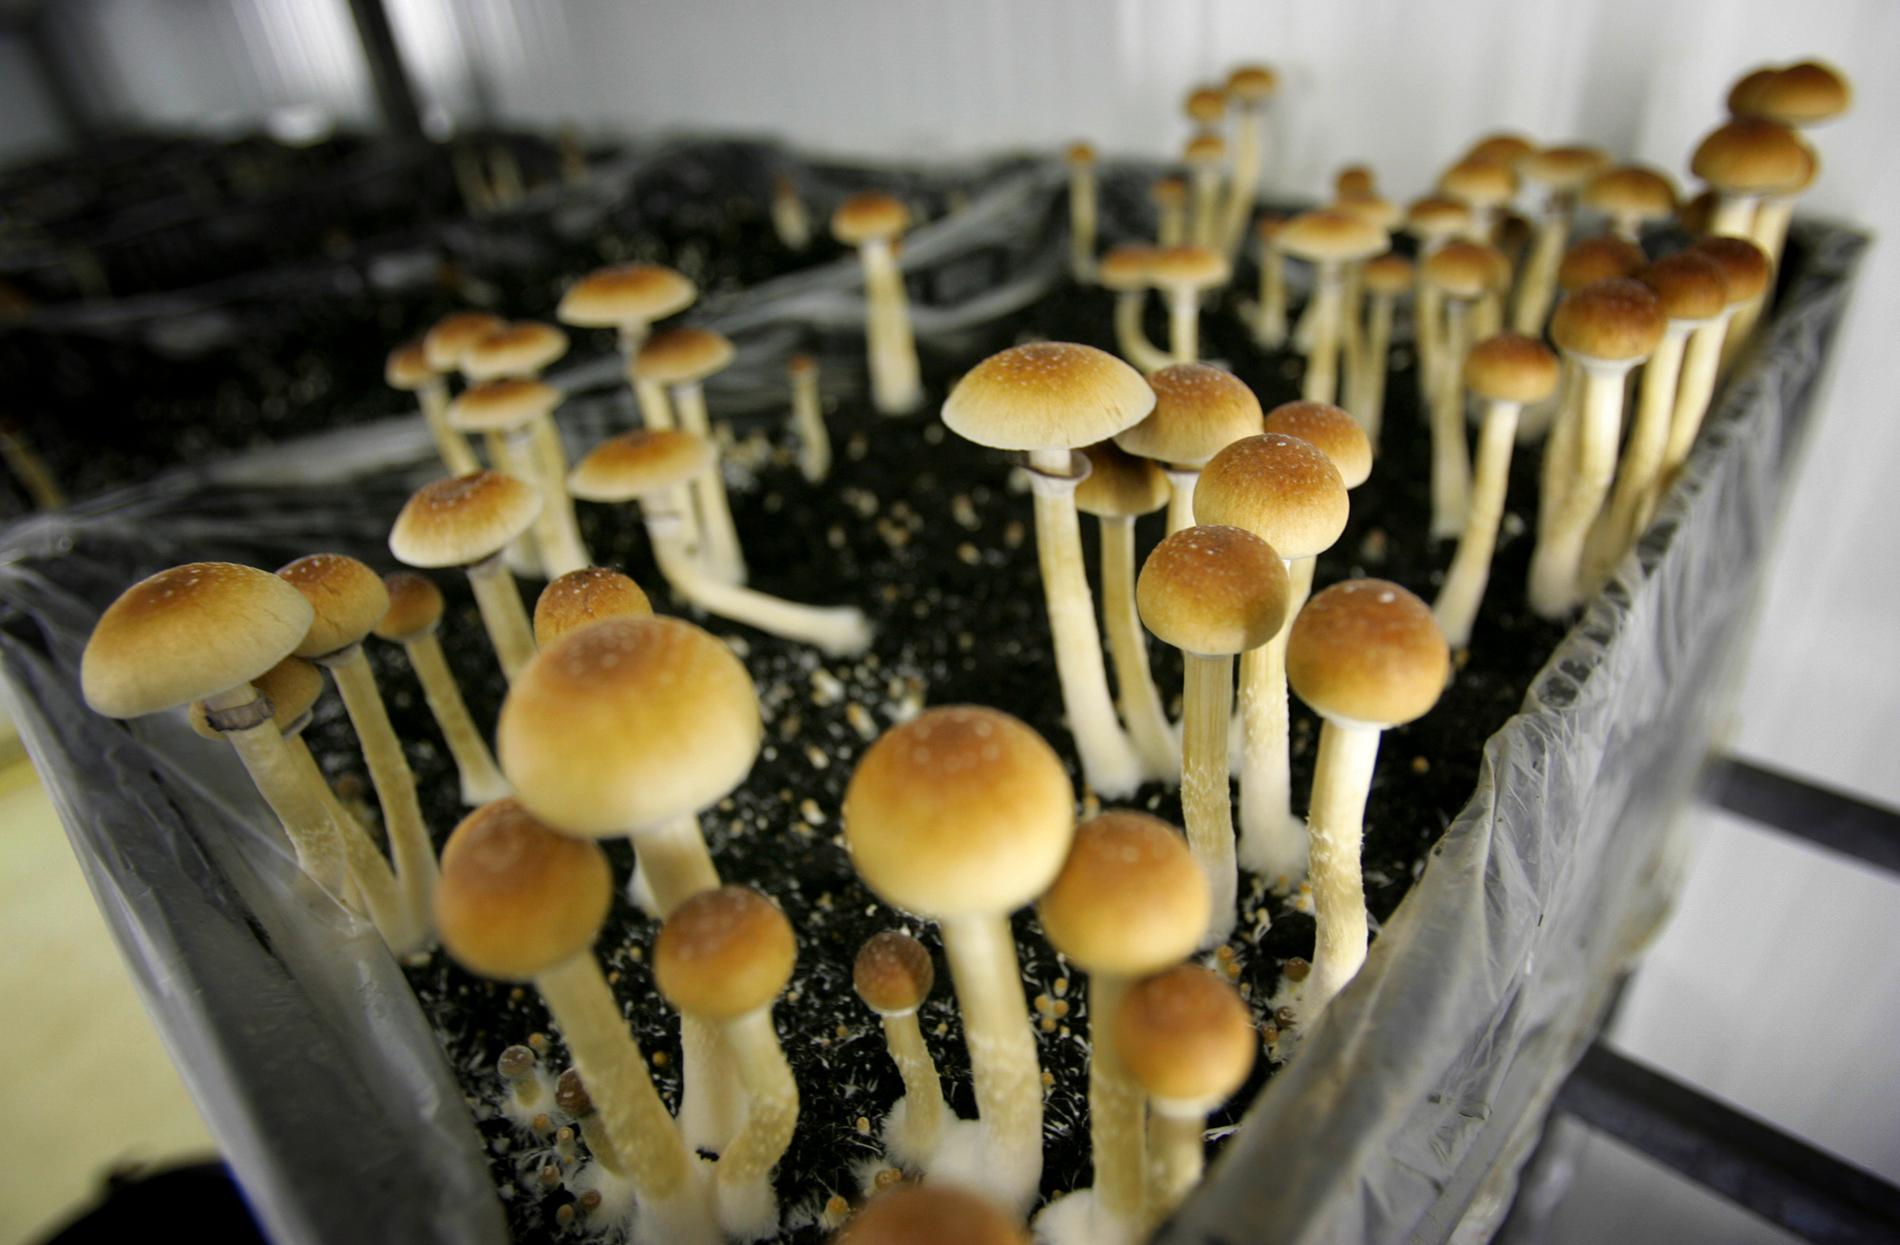 Psykedeliska svampar, här en odling i ett forskningslabb i Nederländerna.